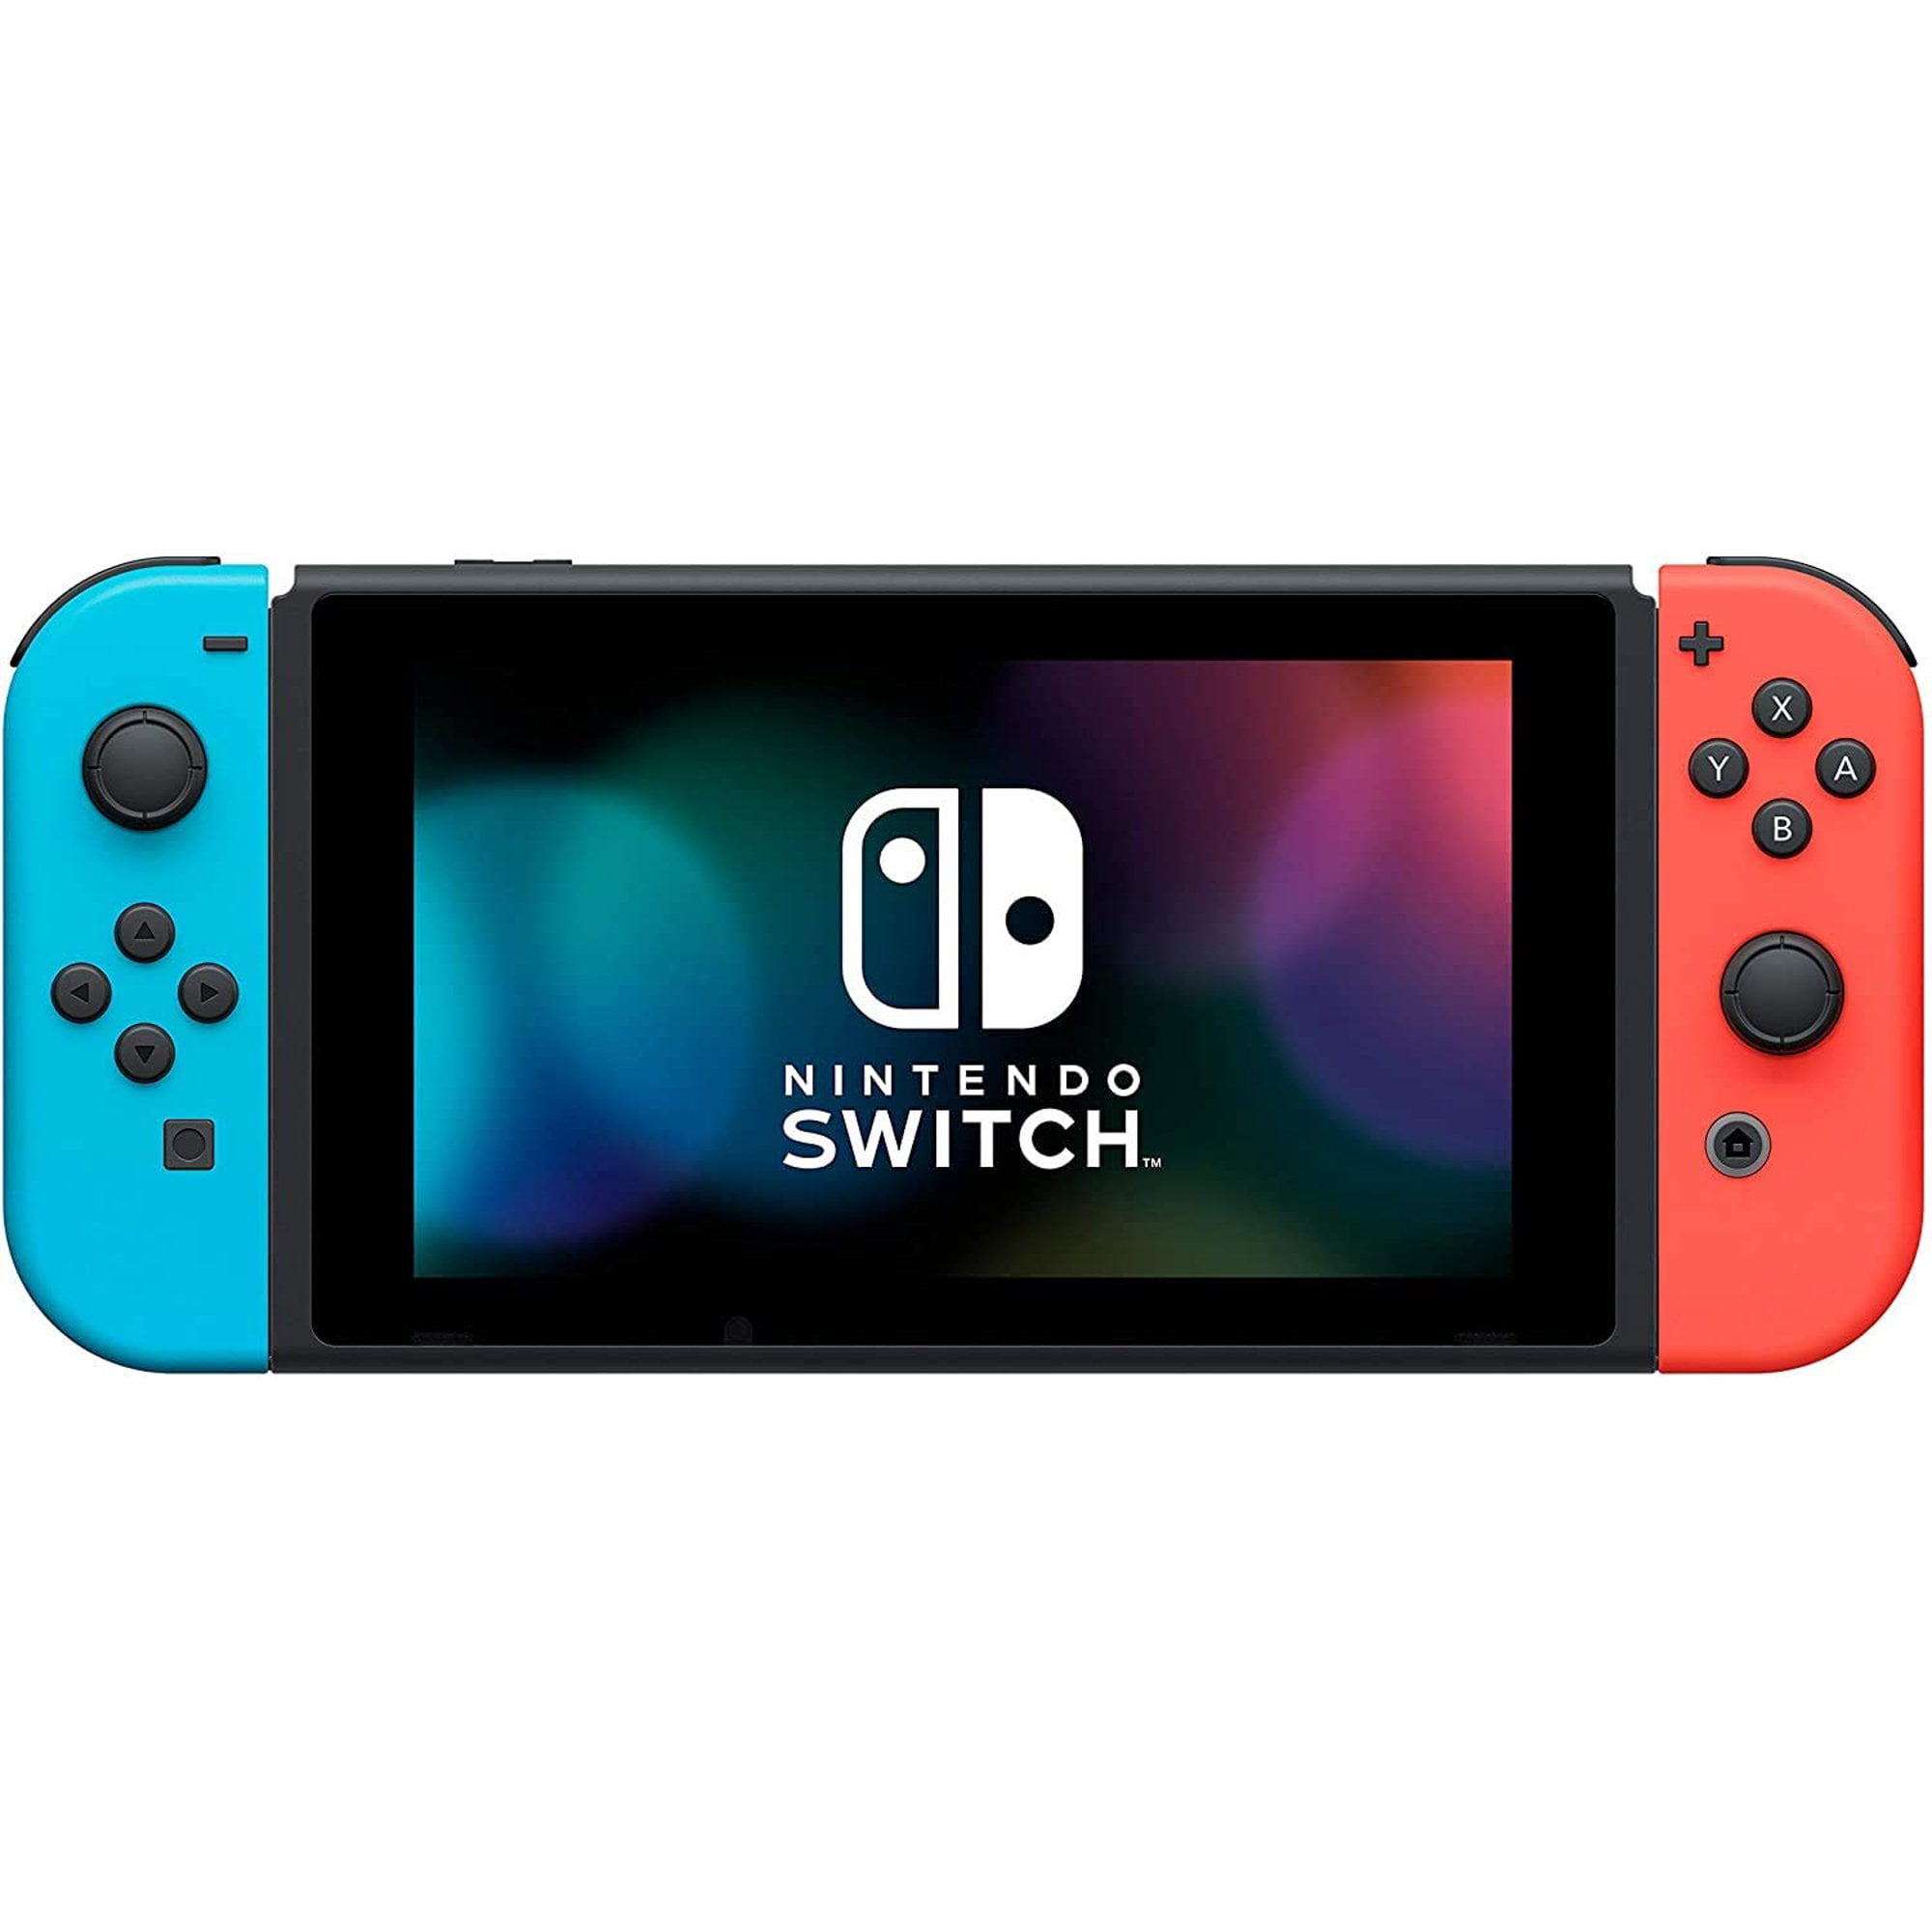 Nintendo switch купить в москве. Игровая консоль Nintendo Switch 32 GB. Игровая приставка Nintendo Switch Rev.2 32 ГБ. Нинтендо свитч Зельда эдишн. Игровая консоль Nintendo Switch (серый).